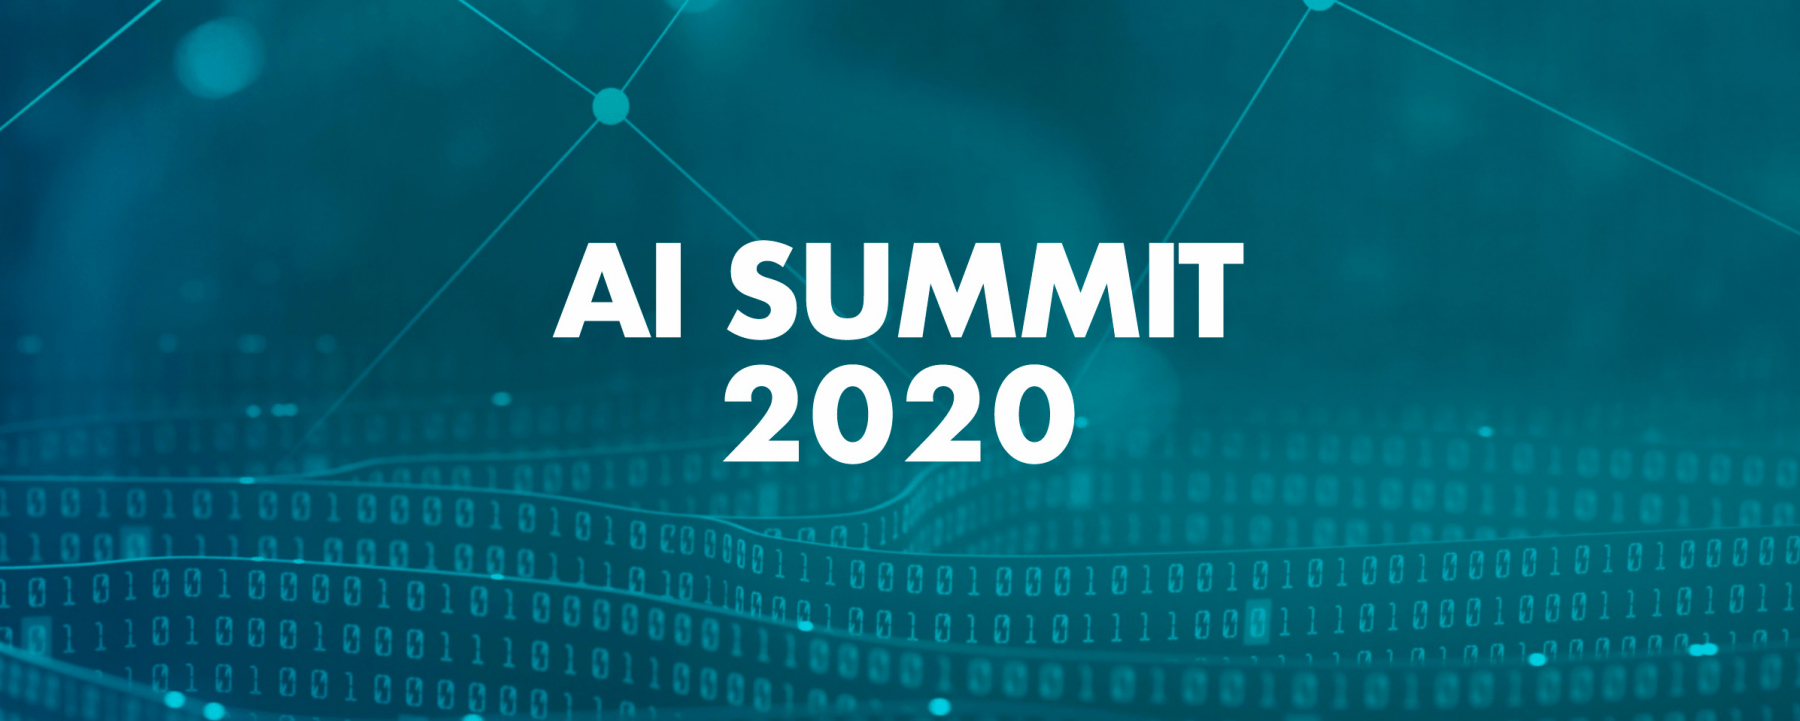 Policito AI SUMMIT 2020, un événement organisé par Drive Innovation Insights